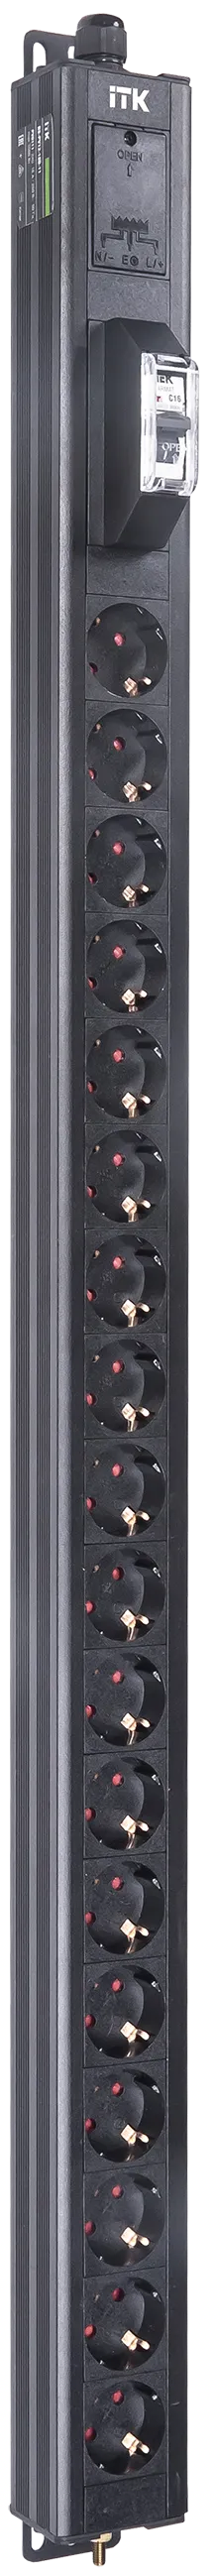 Вертикальный однотипный блок распределения питания PDU ITK включает в себя 18 розеток Schuko. PDU ITK изготавливается из высококачественных термостойких материалов и пластмасс, оснащается 2,6 метровым кабелем электропитания с вилкой Schuko. PDU ITK прекрасно справляется с задачей по электроснабжению сетевого оборудования в шкафах и стойках, а также с требованием защиты от токов короткого замыкания и перенапряжения. PDU ITK соответствует российским и международным стандартам качества и устанавливается с помощью кронштейнов, при этом положение кронштейнов можно менять, либо безынструментальным методом при помощи монтажных штифтов.